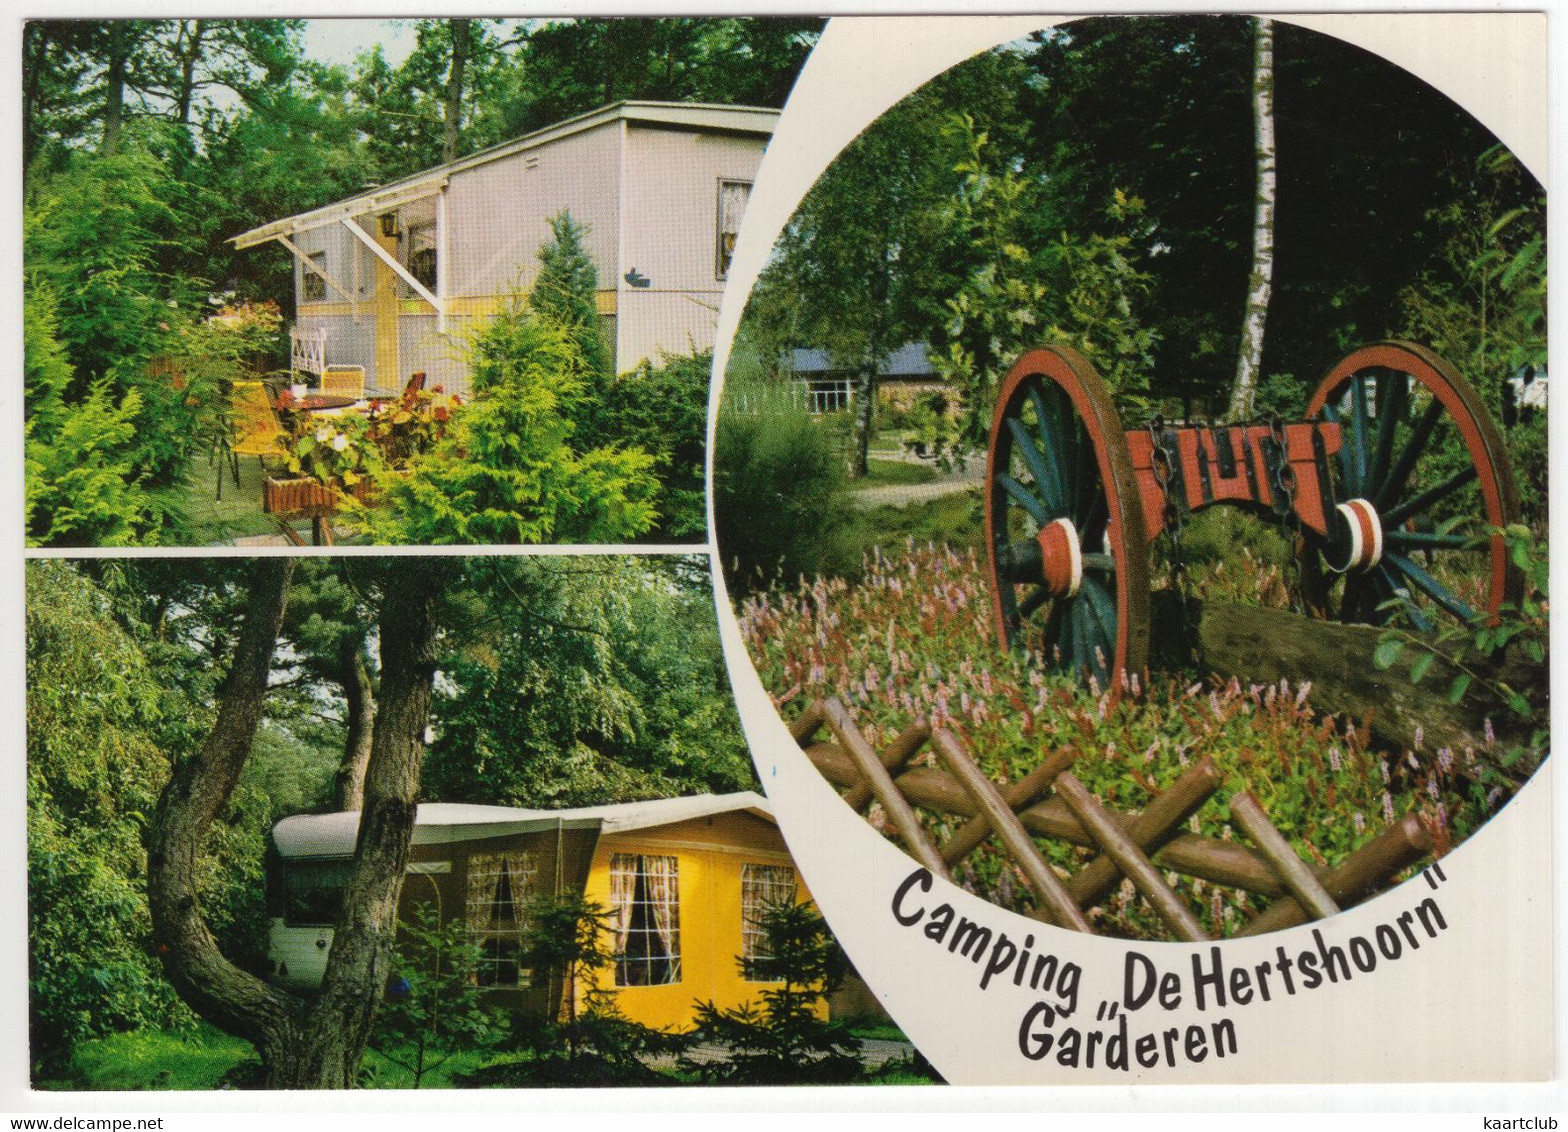 Garderen - Camping 'De Hertshoorn', Putterweg 68-70 - (Gelderland, Nederland) - Barneveld